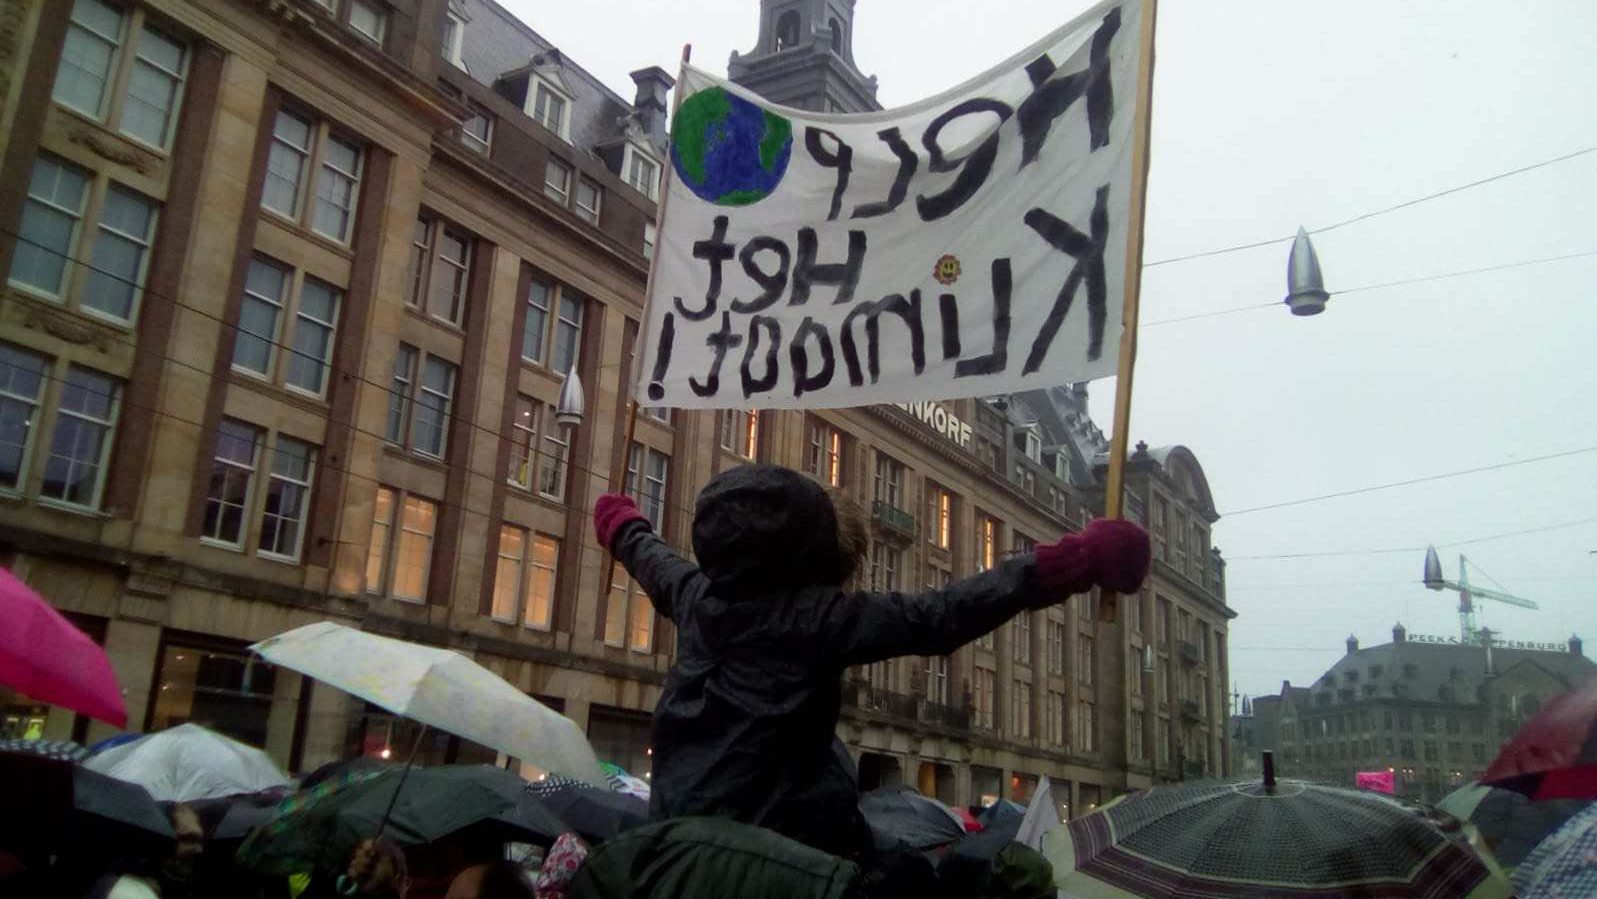 Amsterdam – Climate March | Klimaatmars | Klimamarsch – Willy & Penn